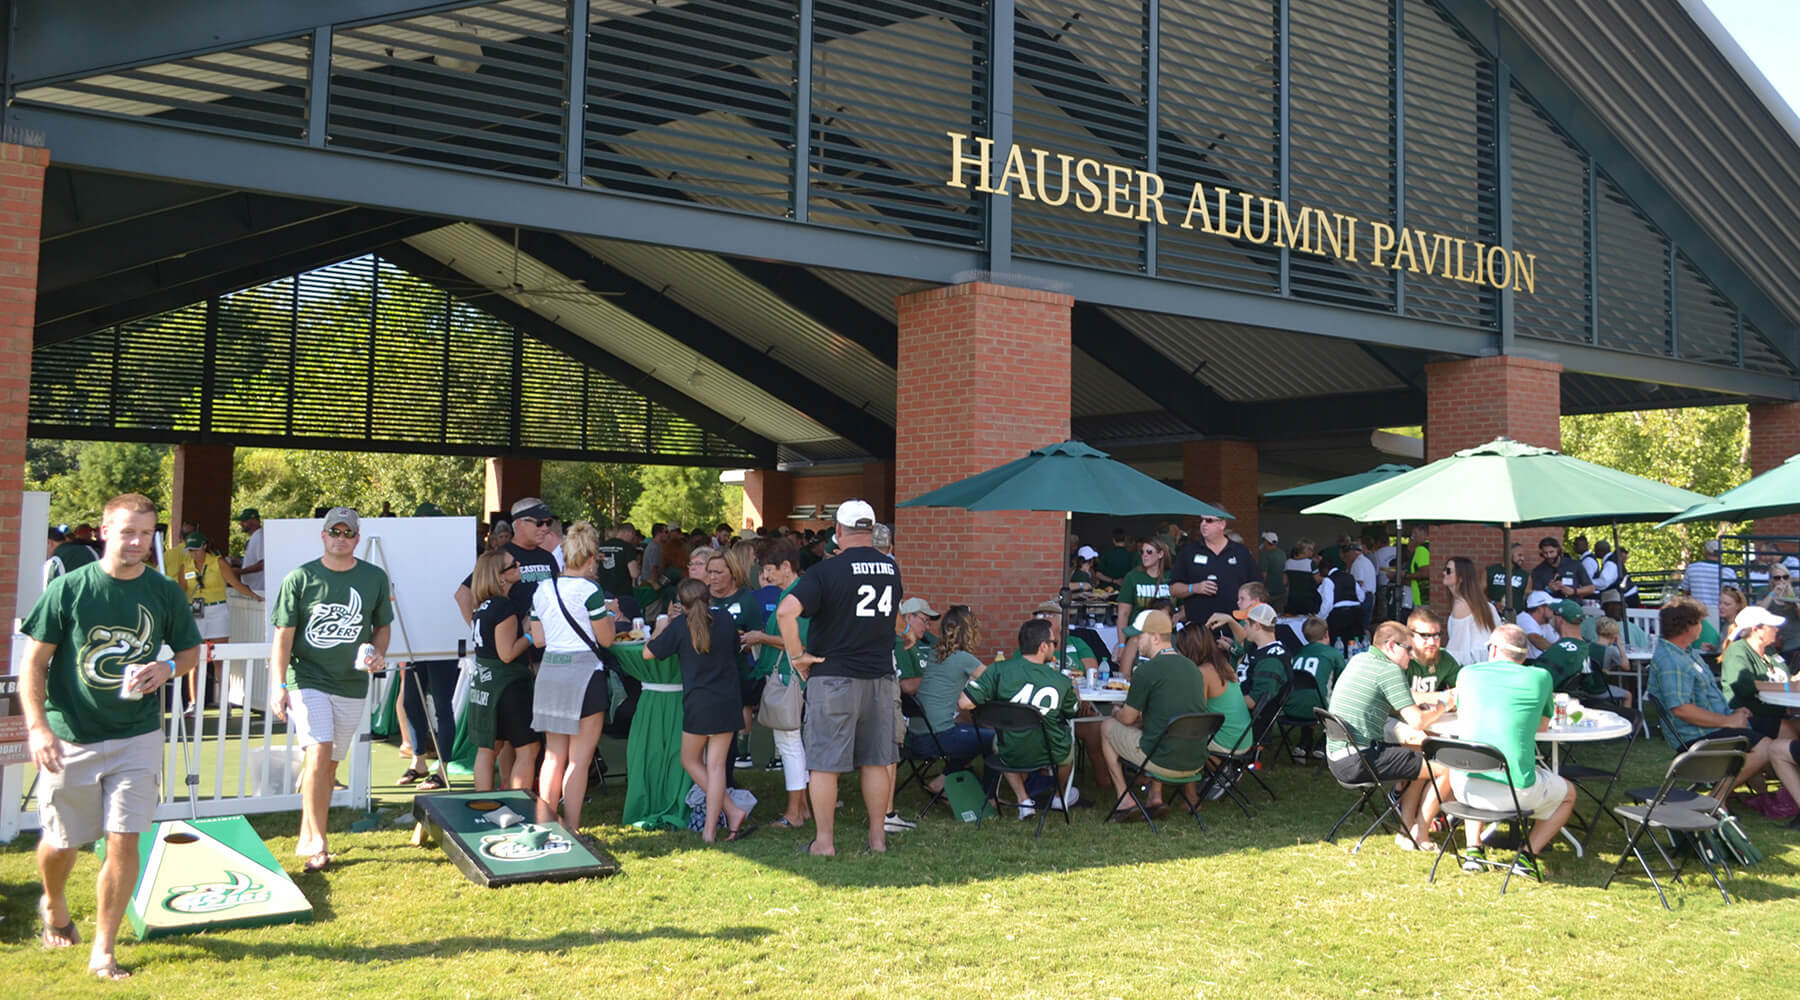 Hauser Alumni Pavilion